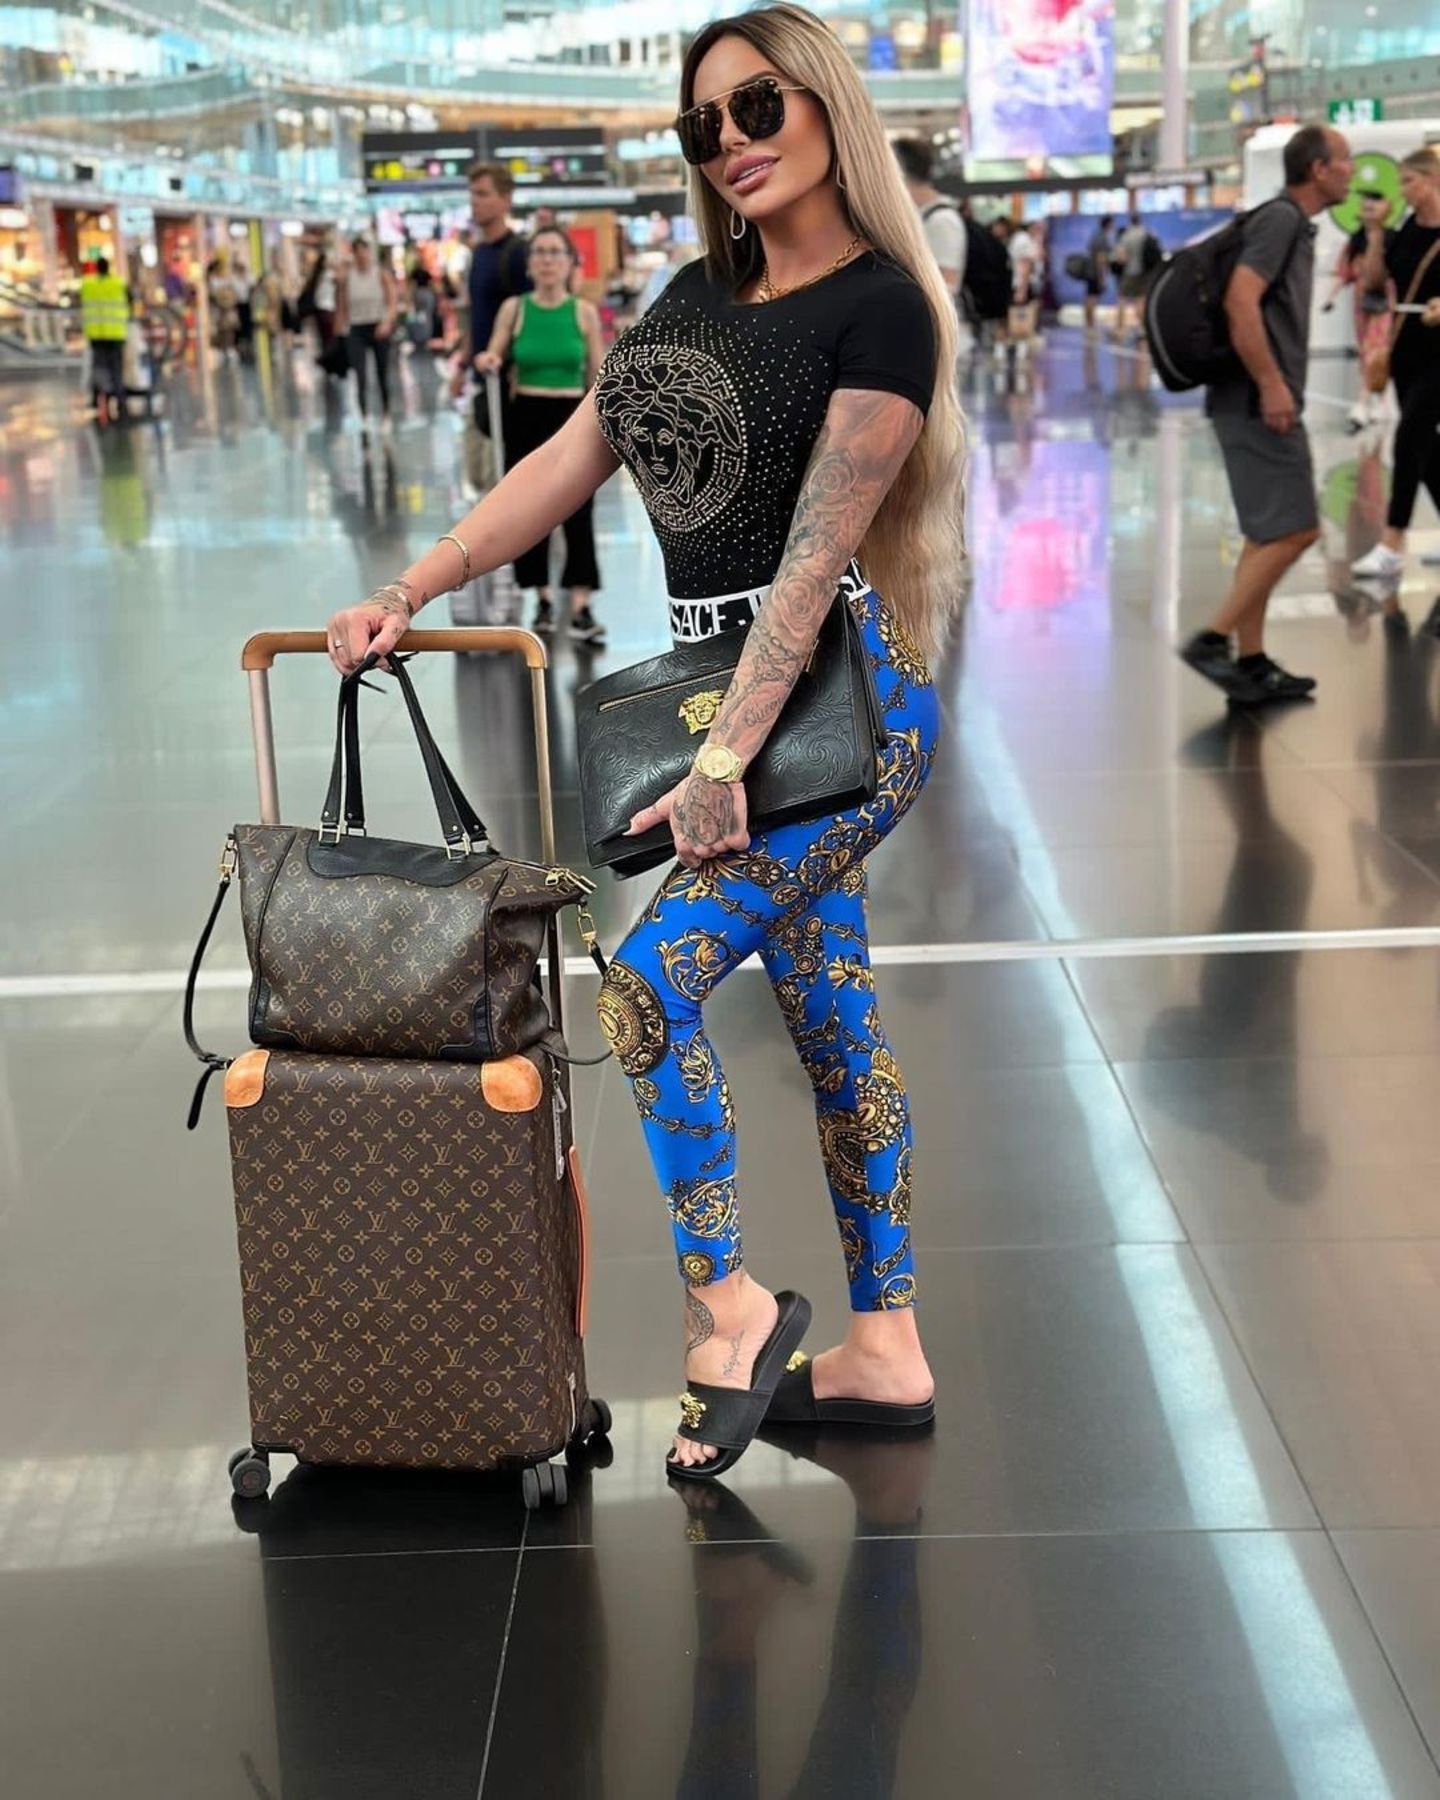 Schlicht ist bei diesem Outfit gar nichts mehr. Gina-Lisa Lohfink kleidet sich von Kopf bis Fuß in Luxuslabels, wenn sie verreist. Besonders beliebt sind Looks von Versace und Louis Vuitton. 